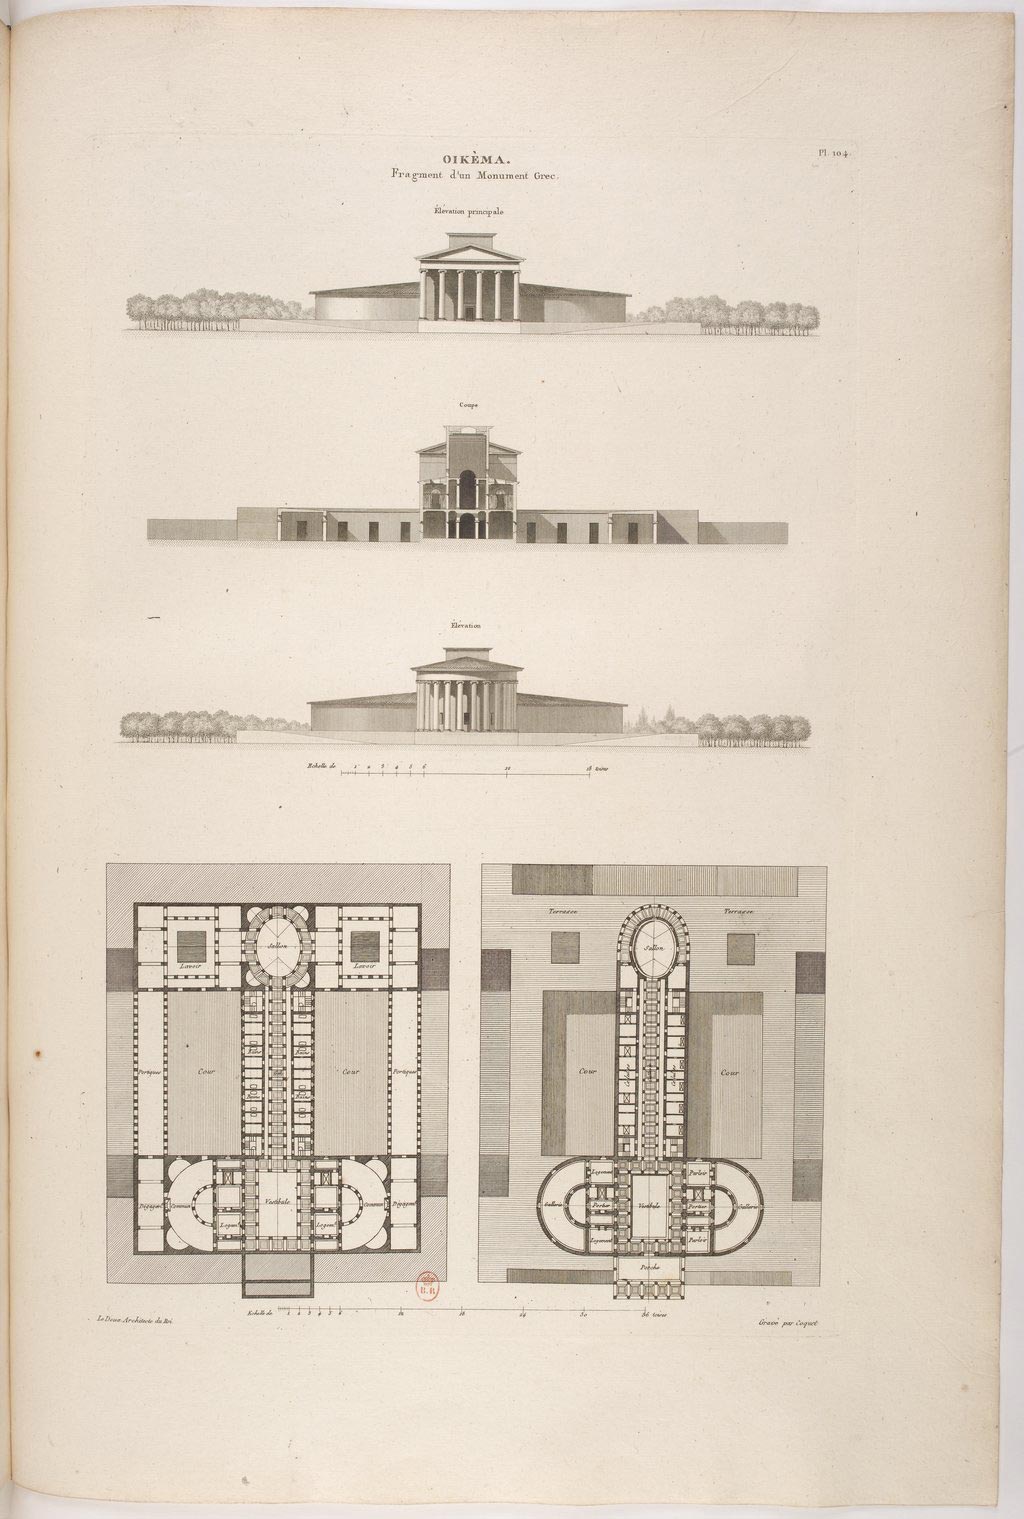 Engraving from L’Architecture considérée sous le rapport de l’art, des moeurs et de la législation. Claude-Nicolas Ledoux, 1804.